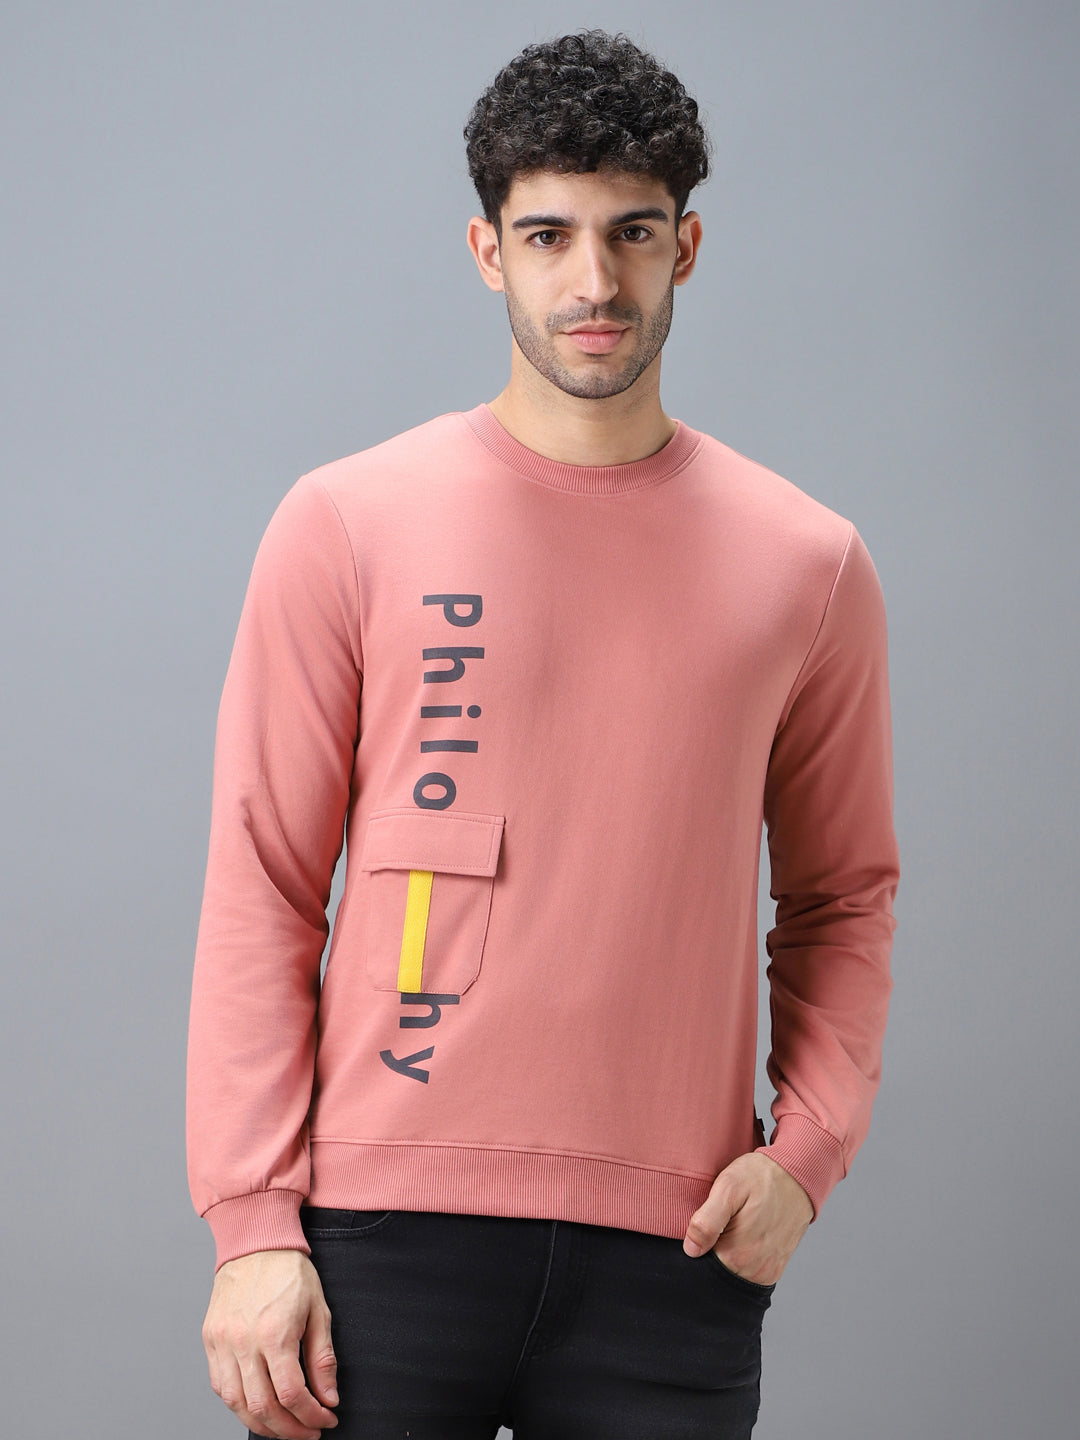 Men's Pink Cotton Graphic Print Round Neck Sweatshirt